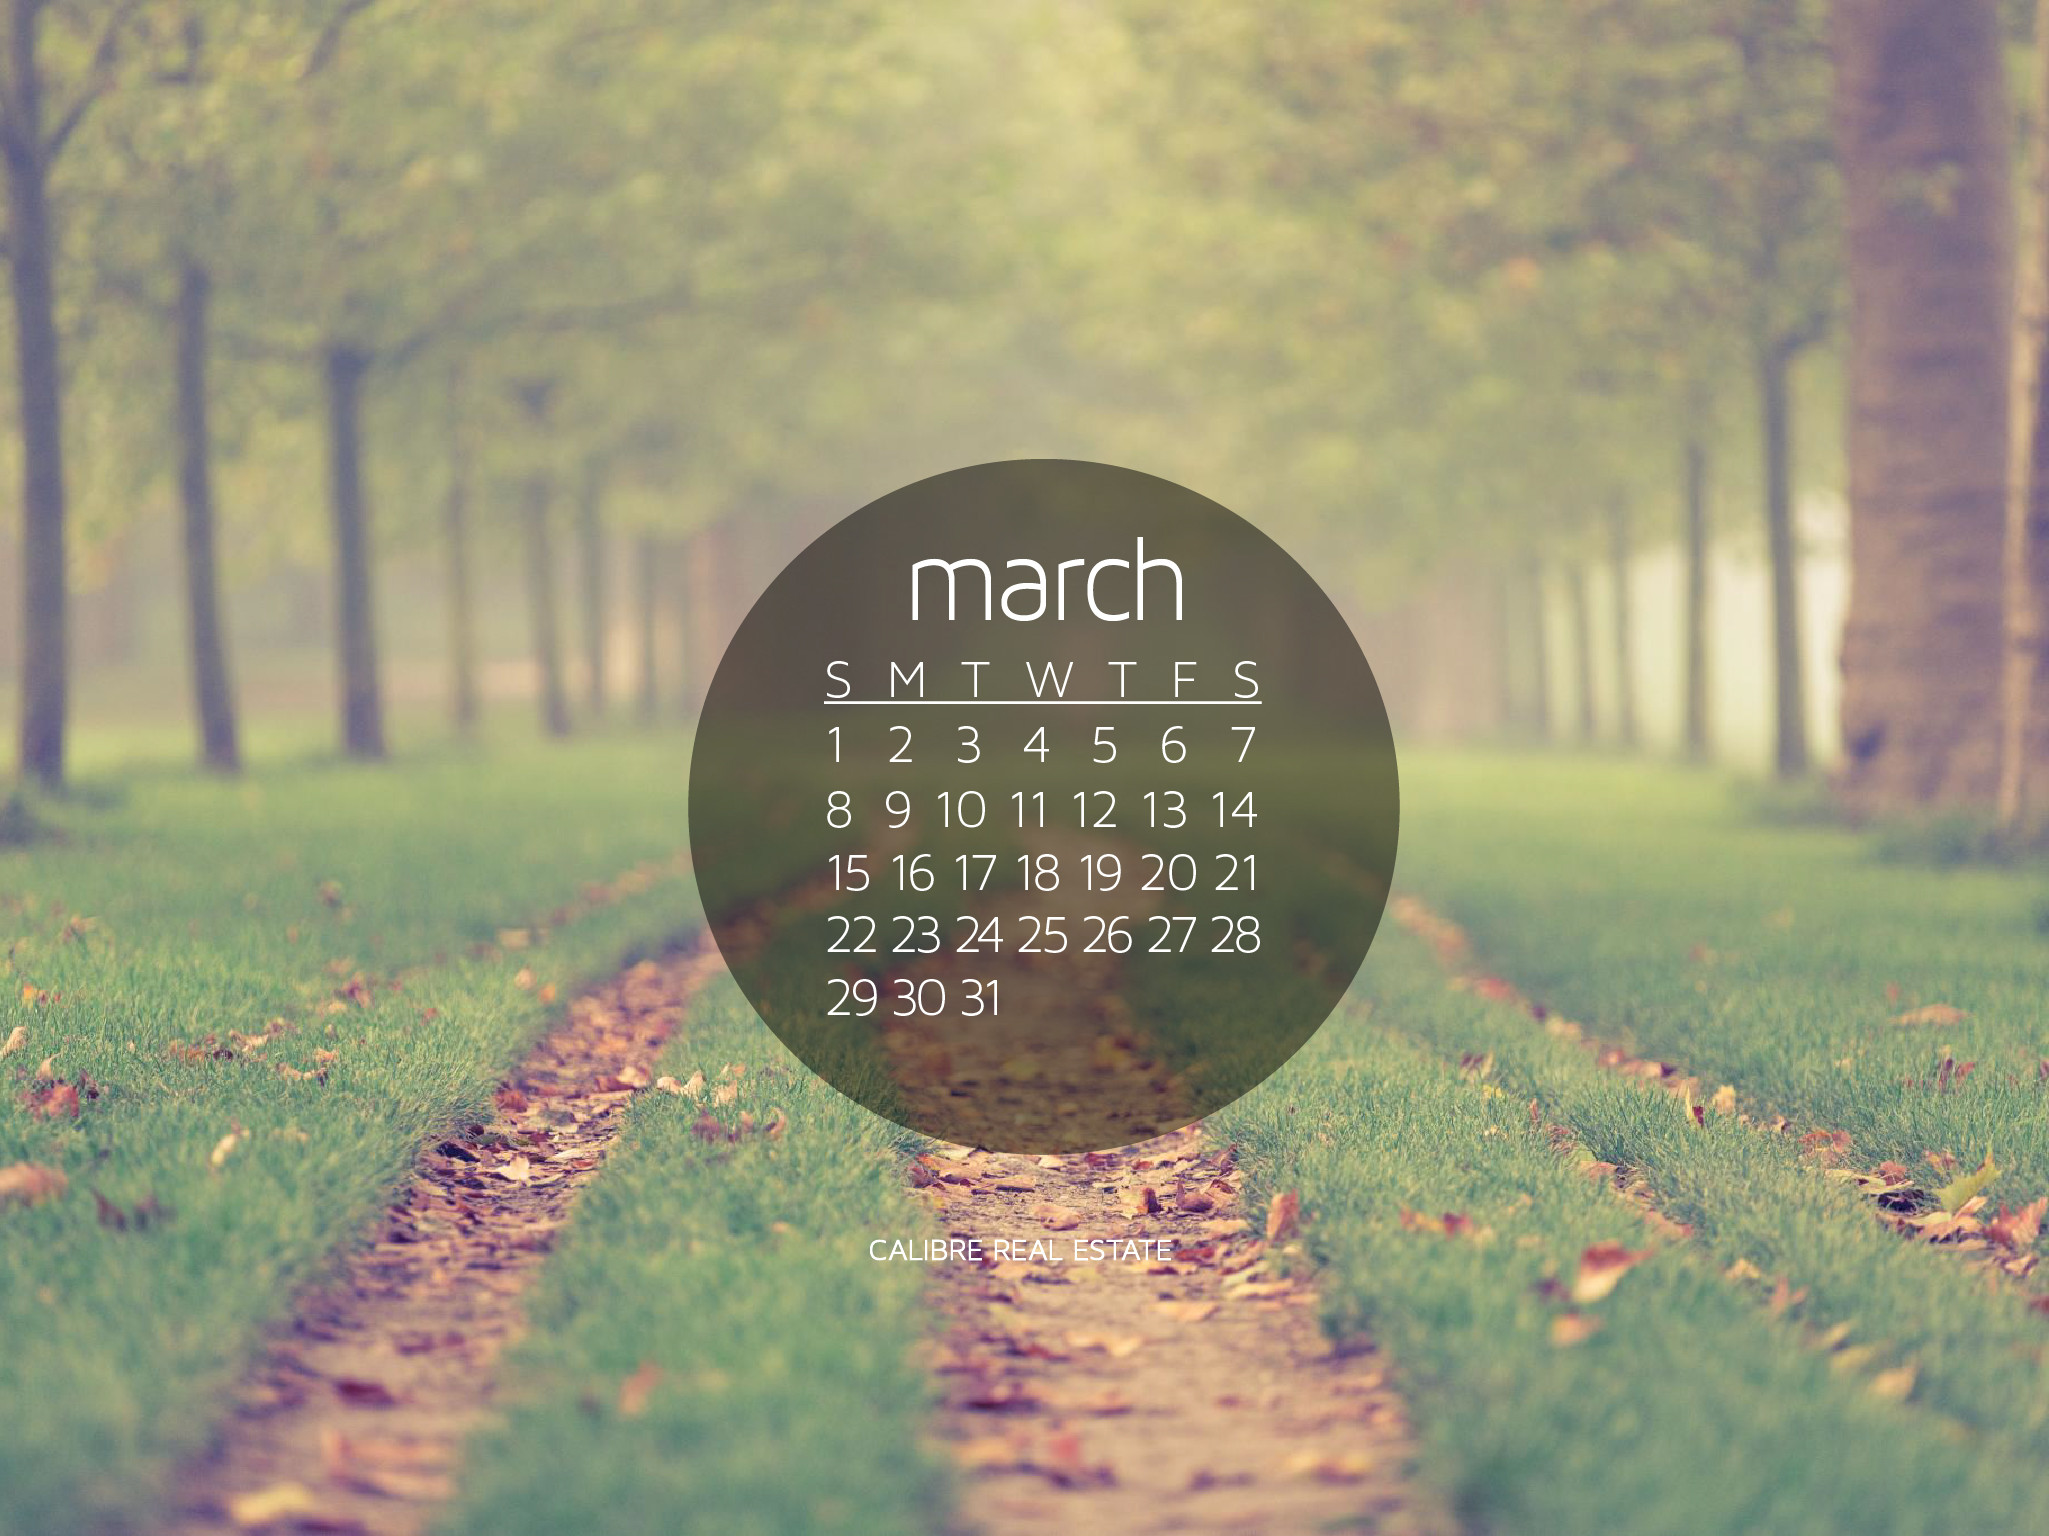 2049x1536 March 2015 Calendar Wallpaper for Desktop. March ...